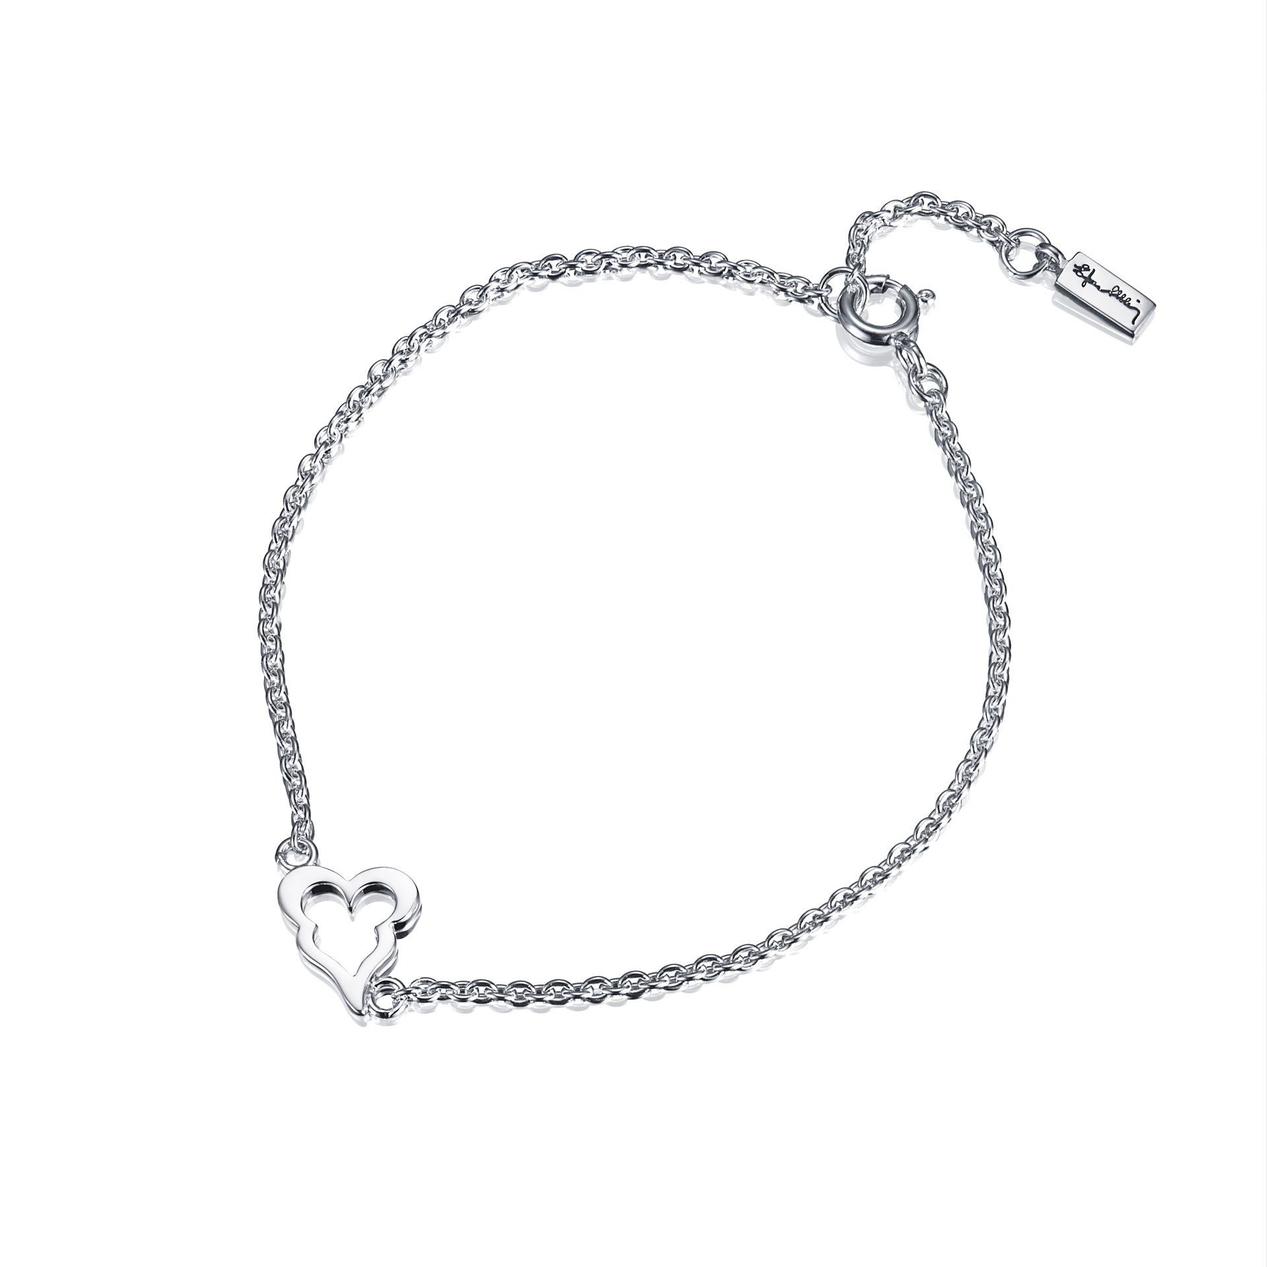 Mini Crazy Heart Bracelet för 910 kr på Efva Attling